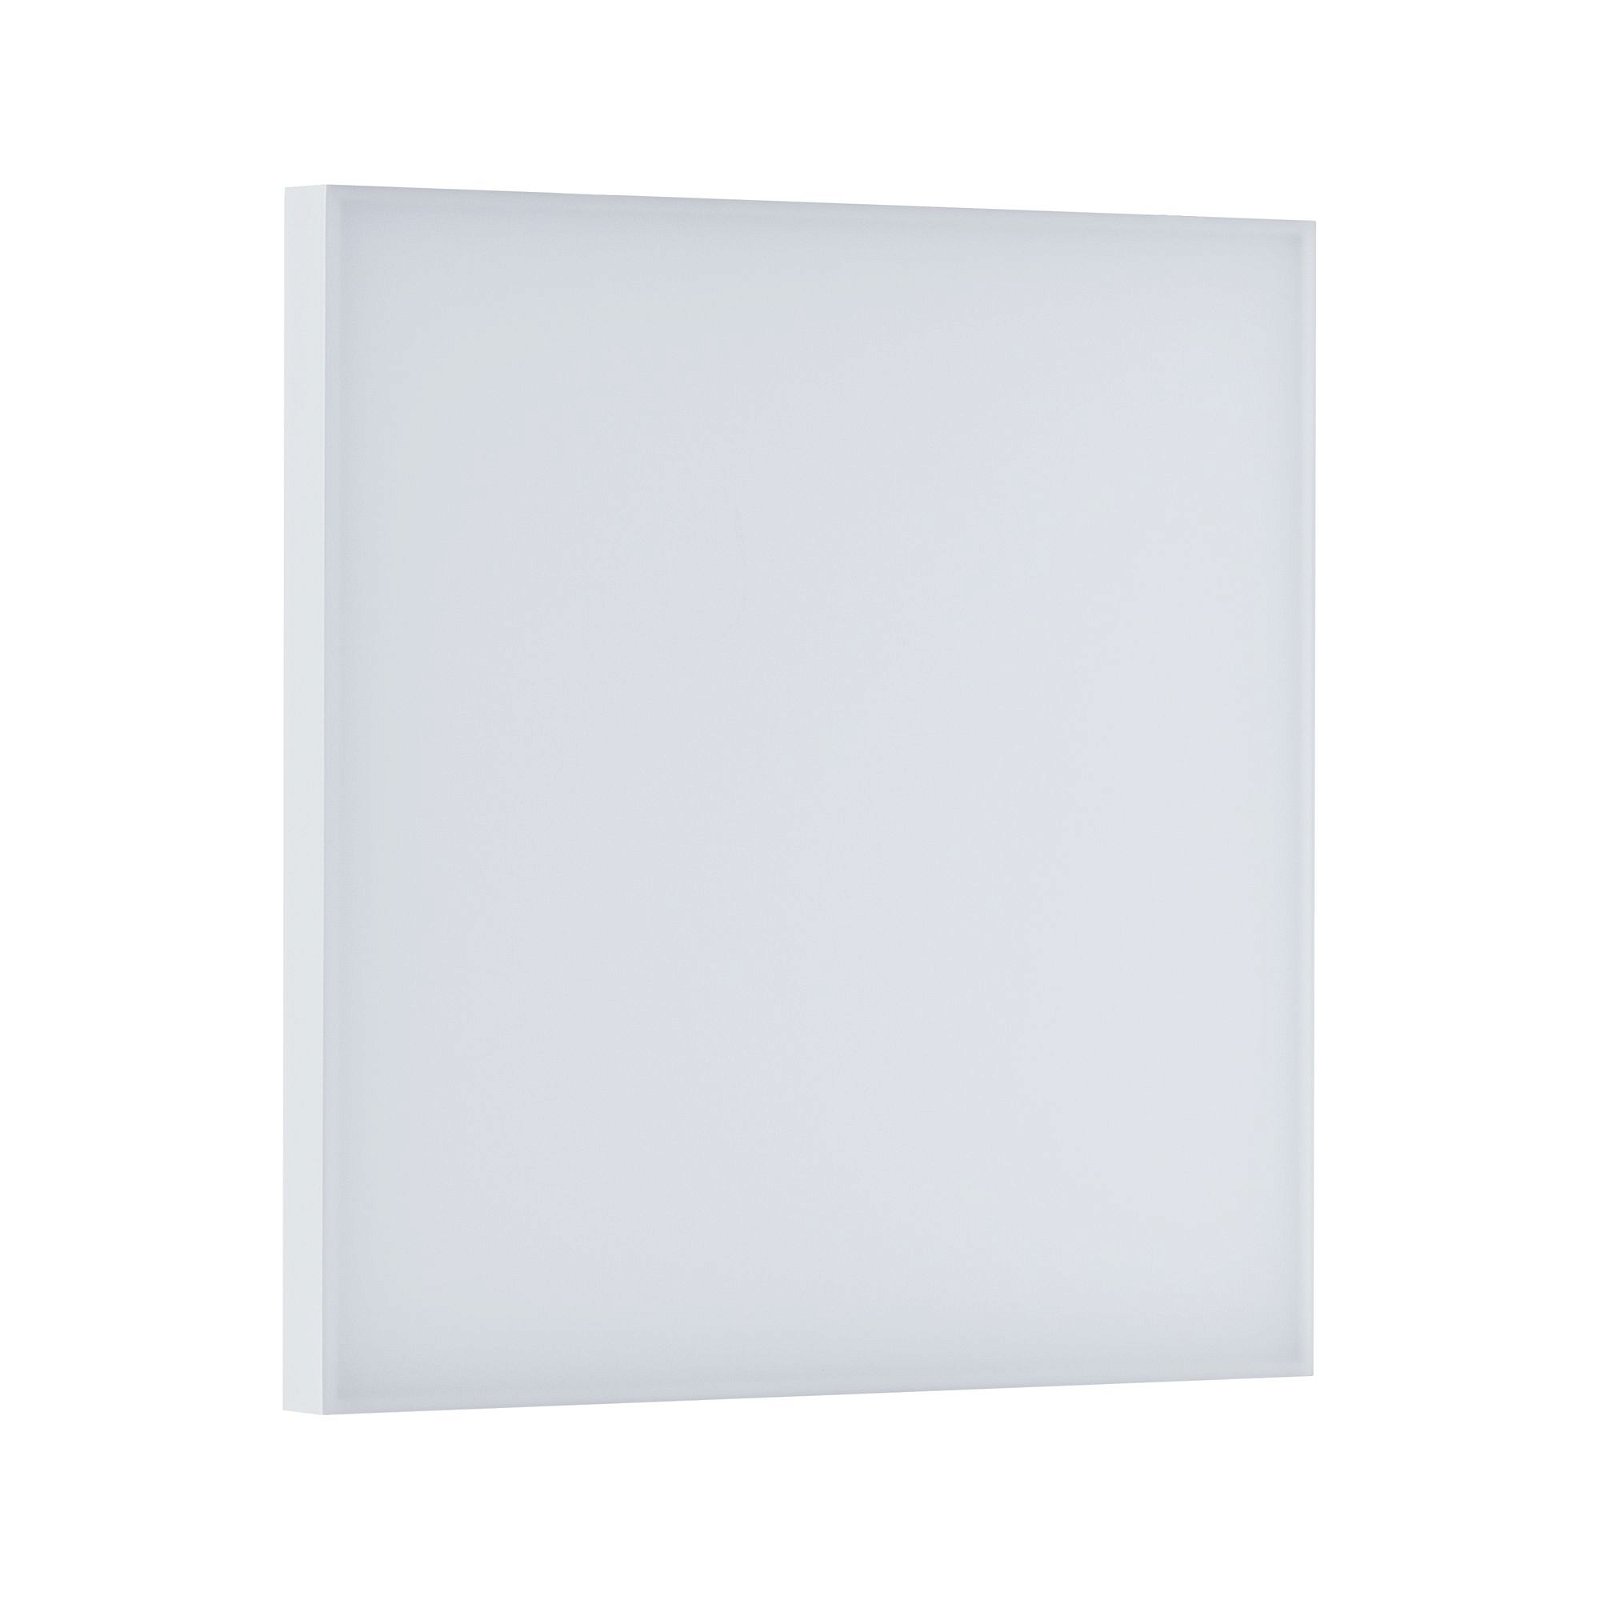 LED-paneel Smart Home Zigbee Velora hoekig 295x295mm Tunable White Wit mat dimbaar